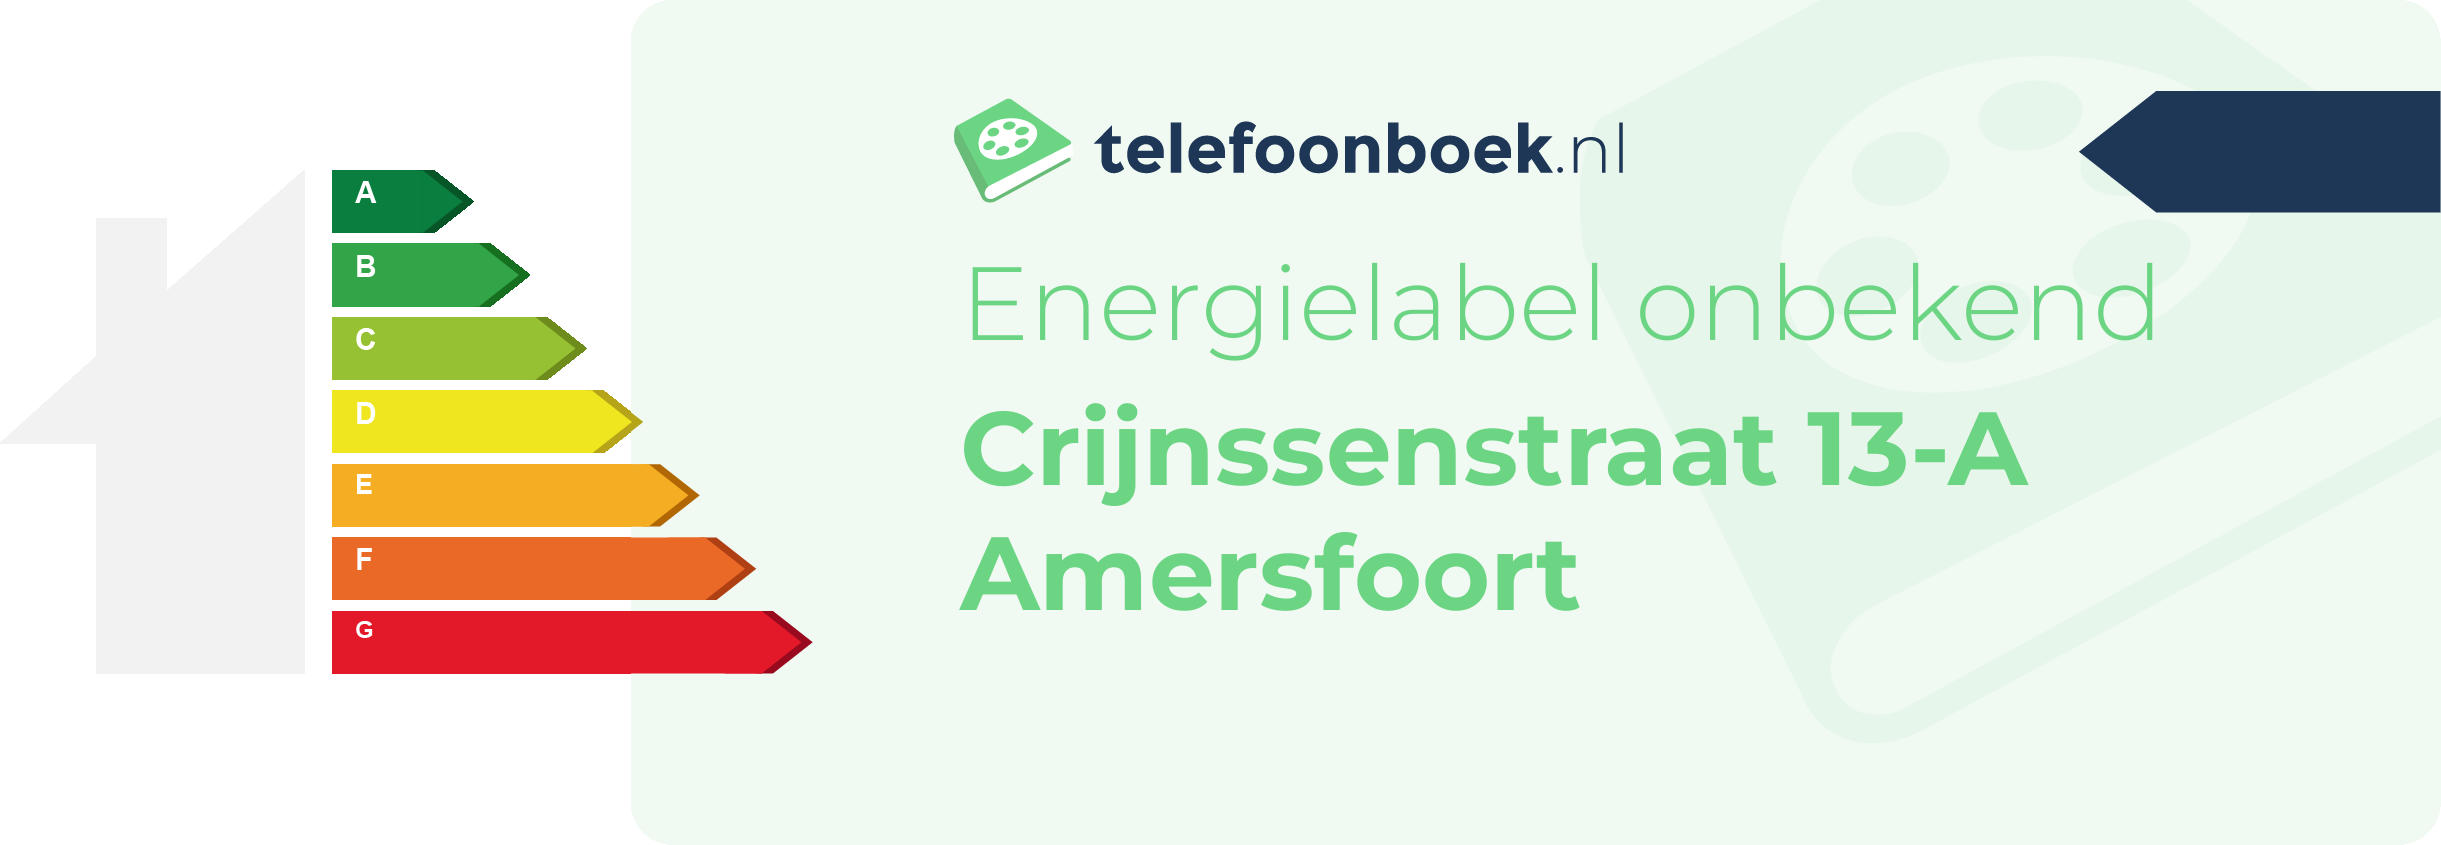 Energielabel Crijnssenstraat 13-A Amersfoort